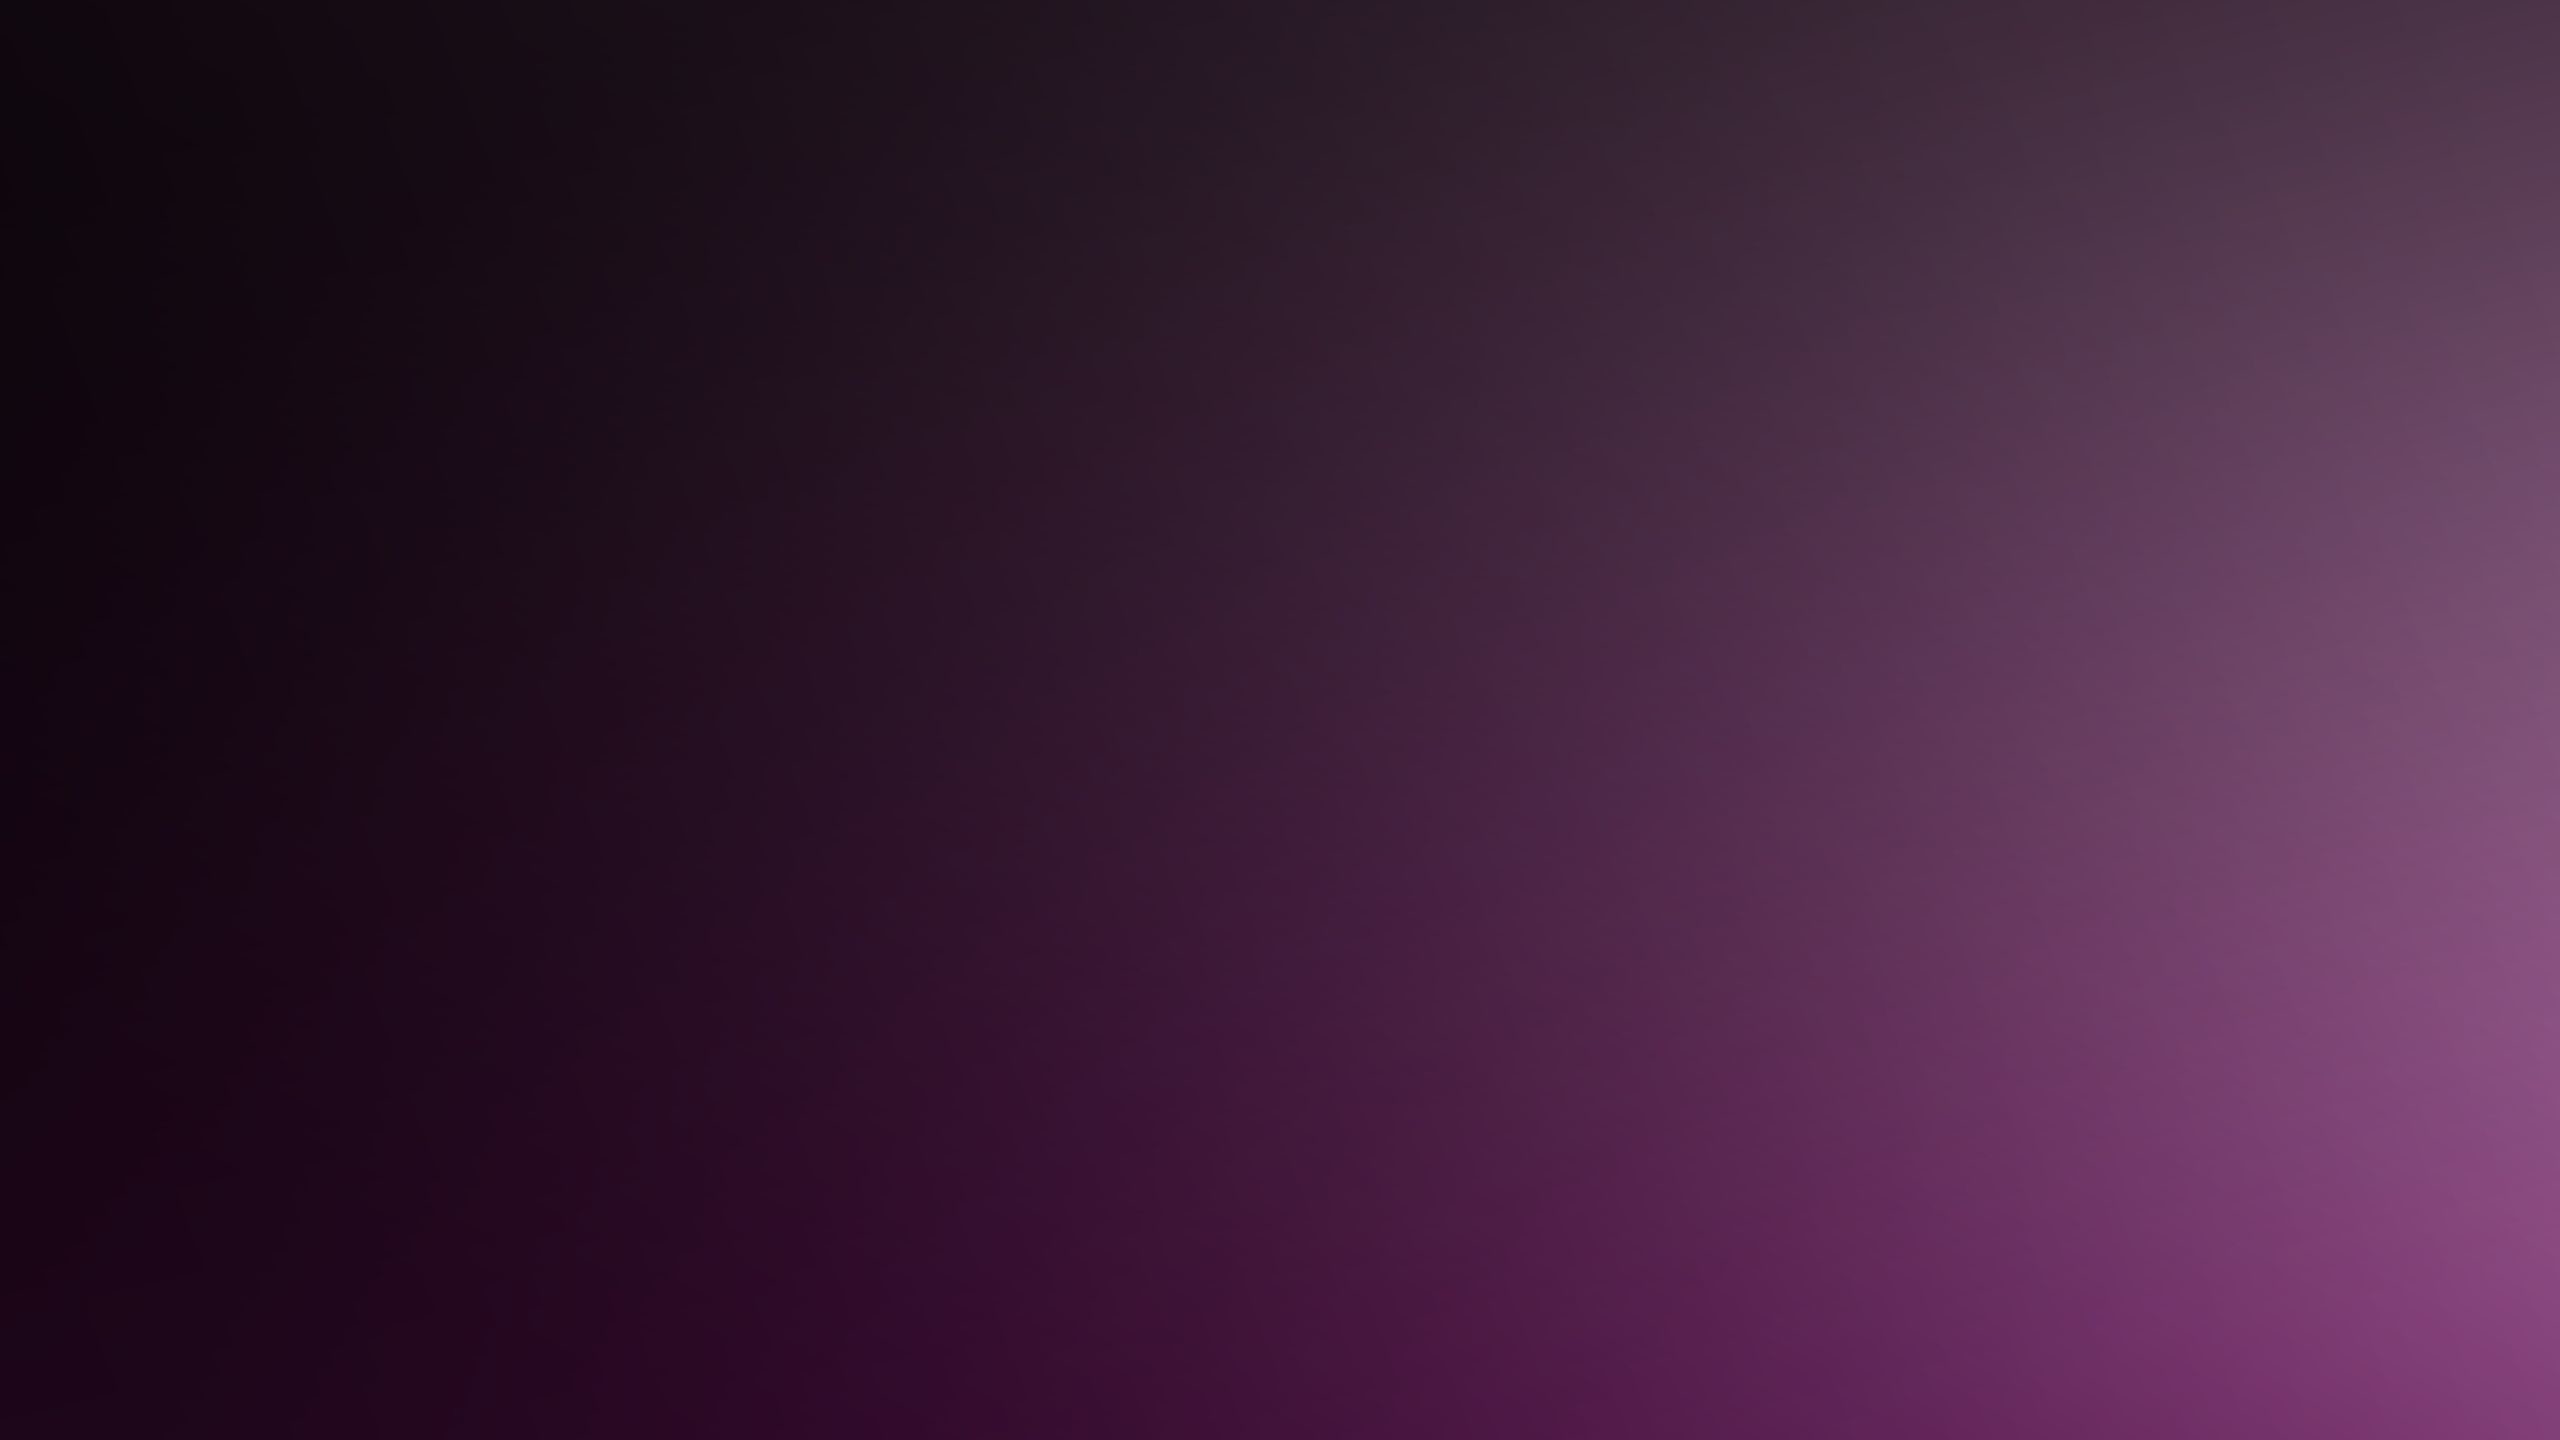 2560x1440 Dark-purple-background-wallpaper-download-wallpapers-11